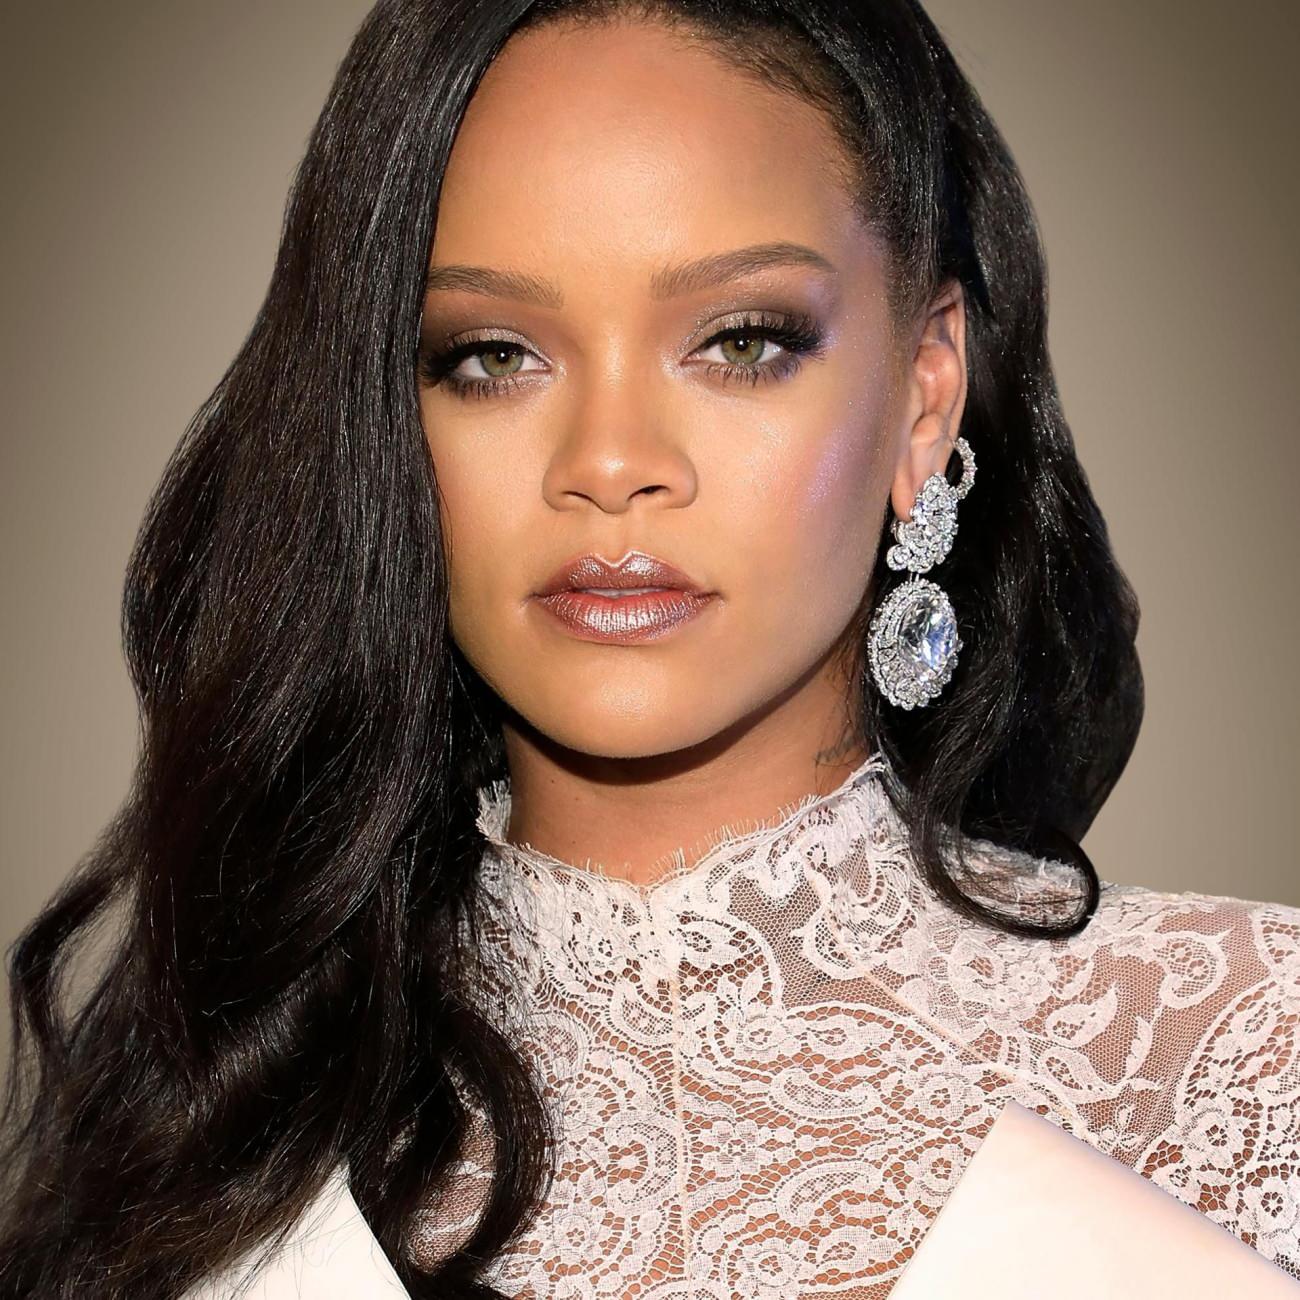 Ünlü şarkıcı Rihanna